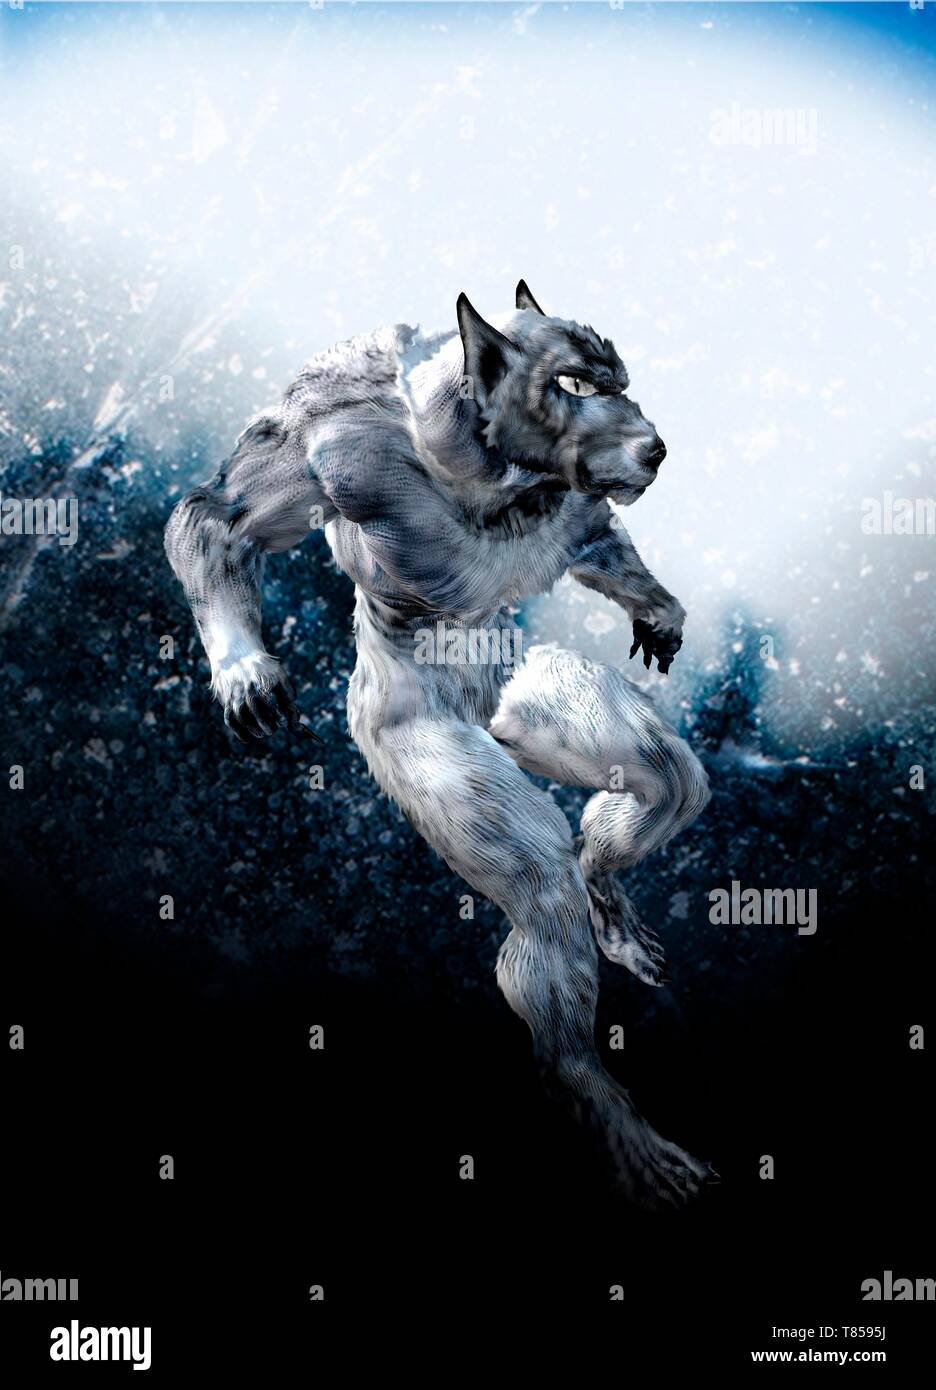 Werewolf, illustration Stock Photo